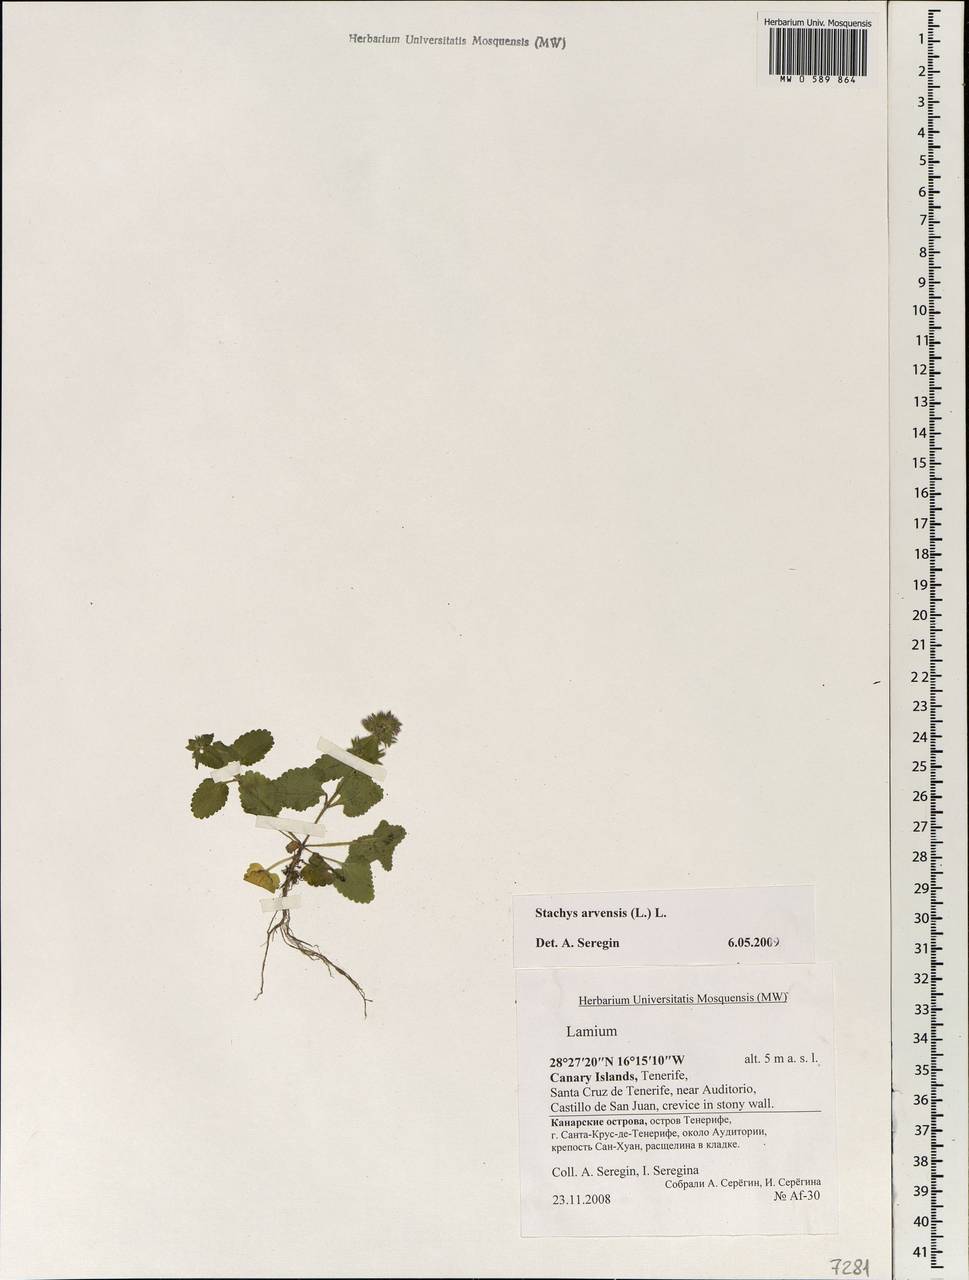 Stachys arvensis (L.) L., Africa (AFR) (Spain)